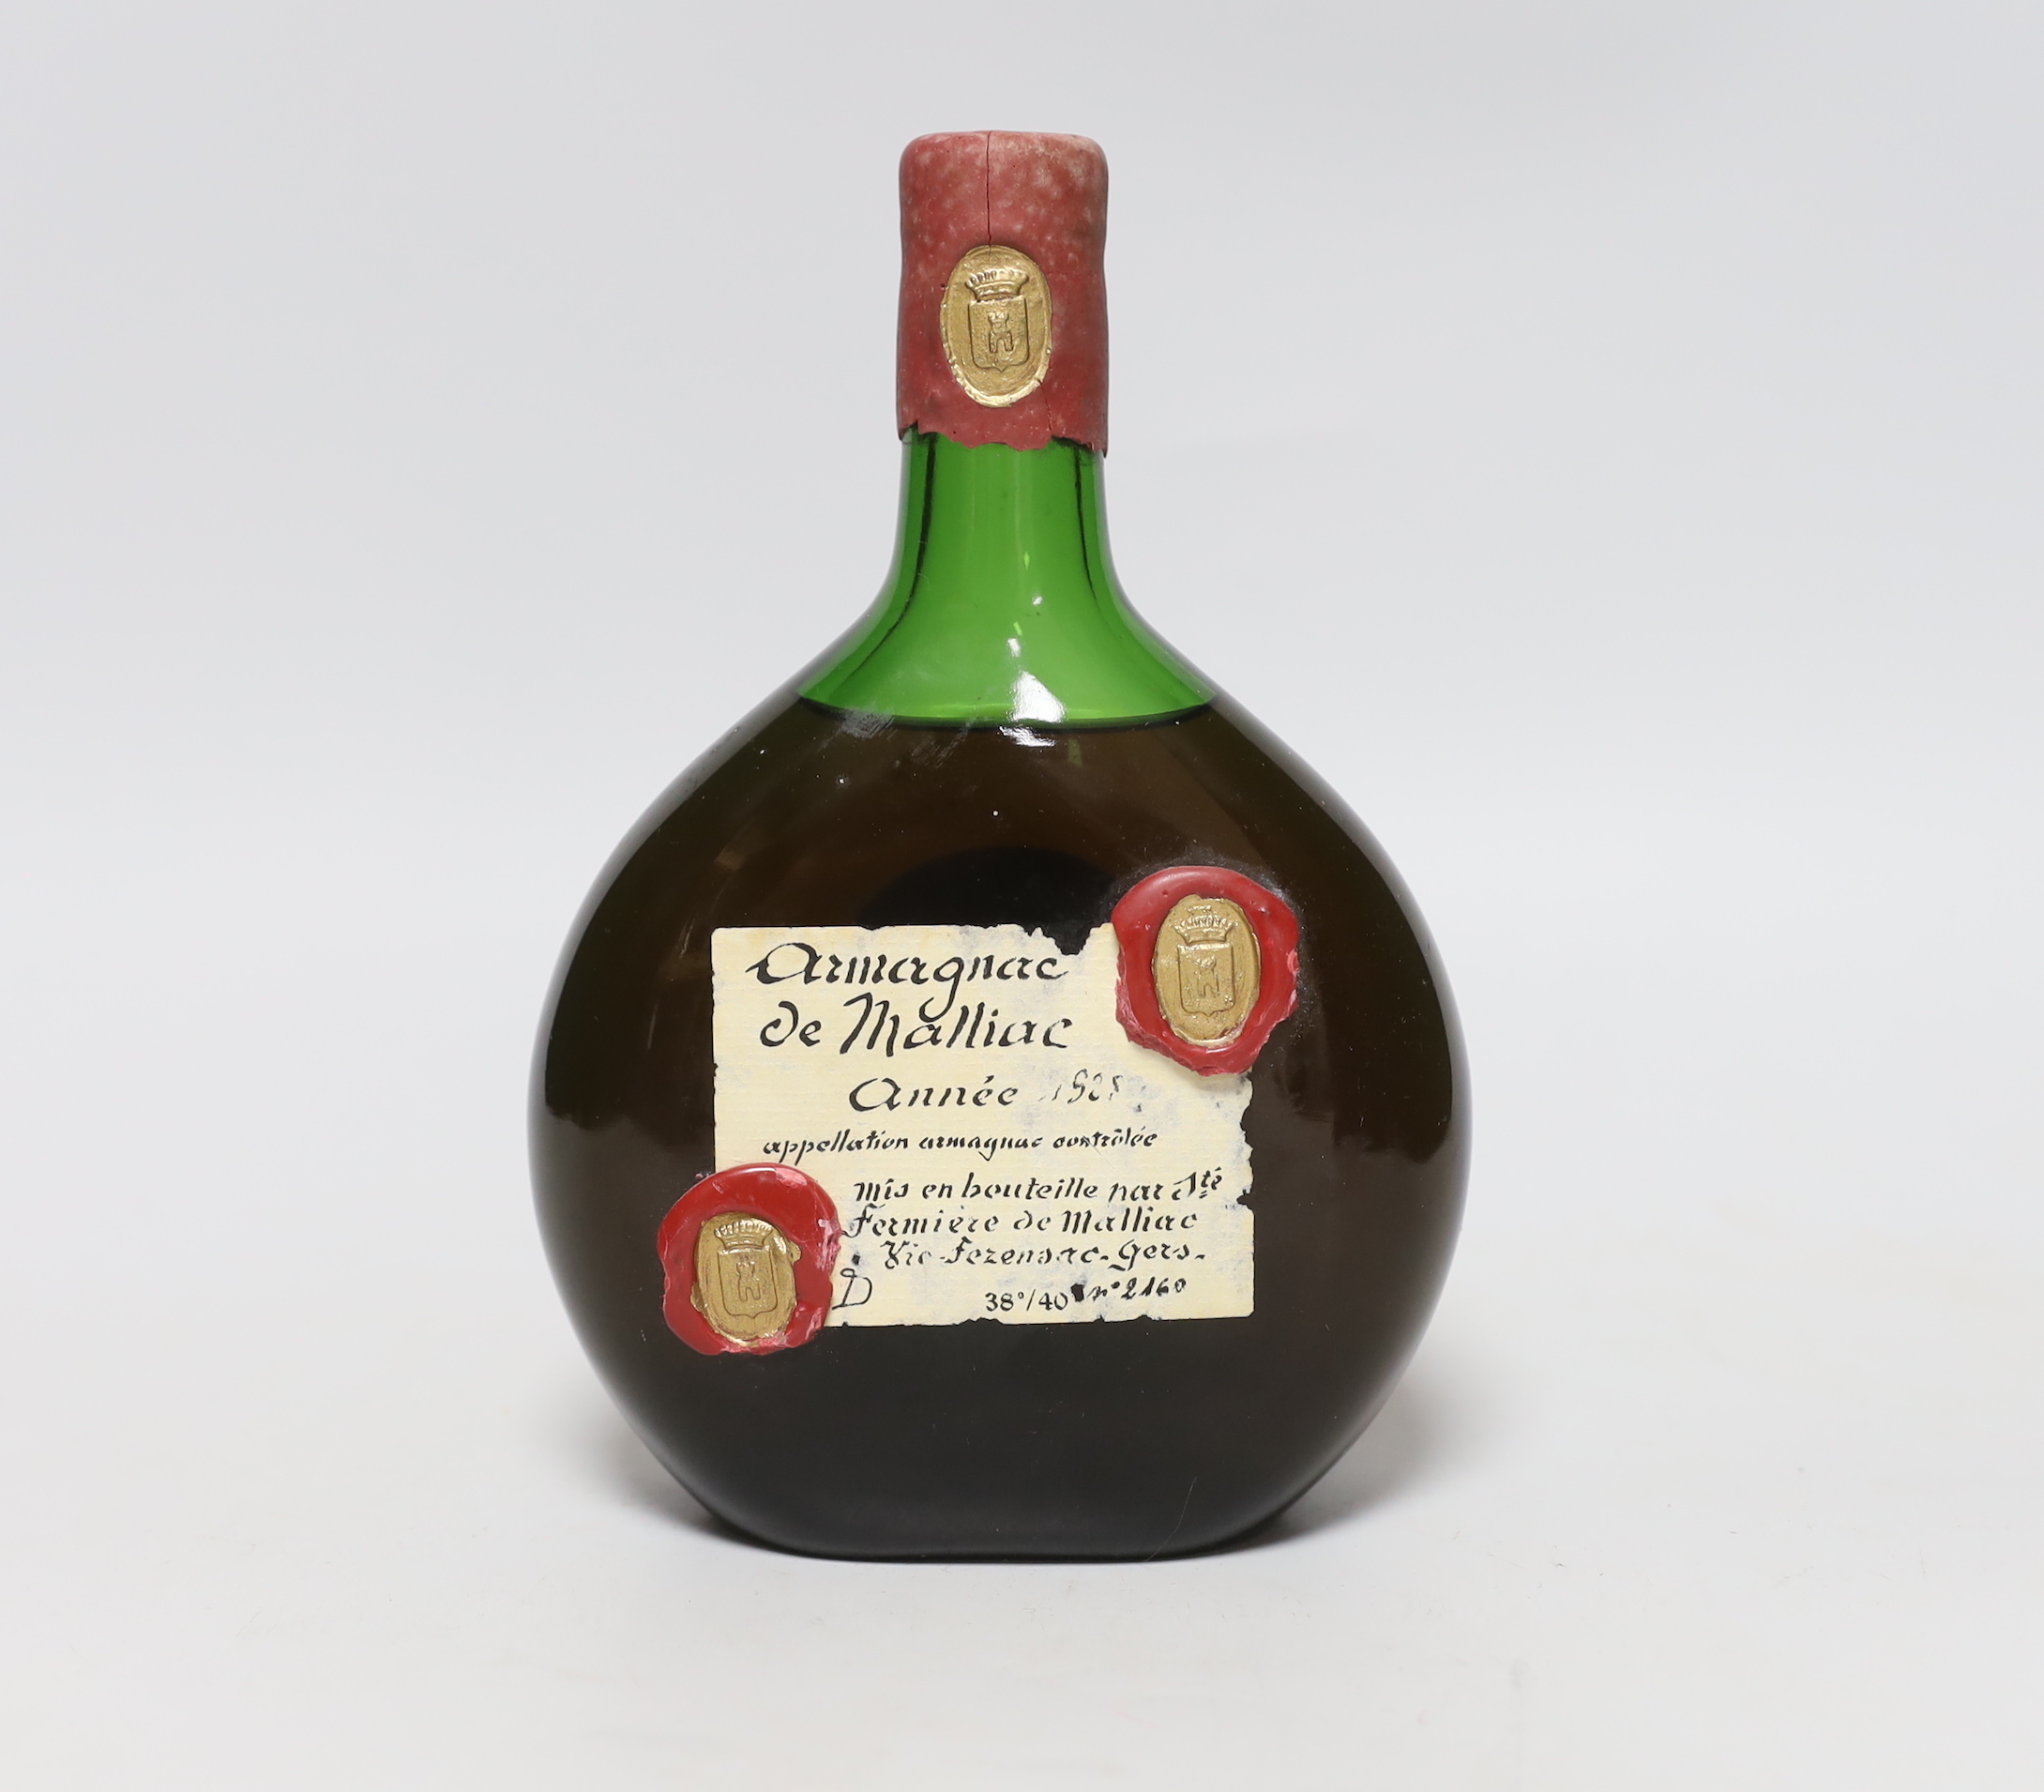 A bottle of Armagnac de Malliac bottled in 1988 with date on the bottle